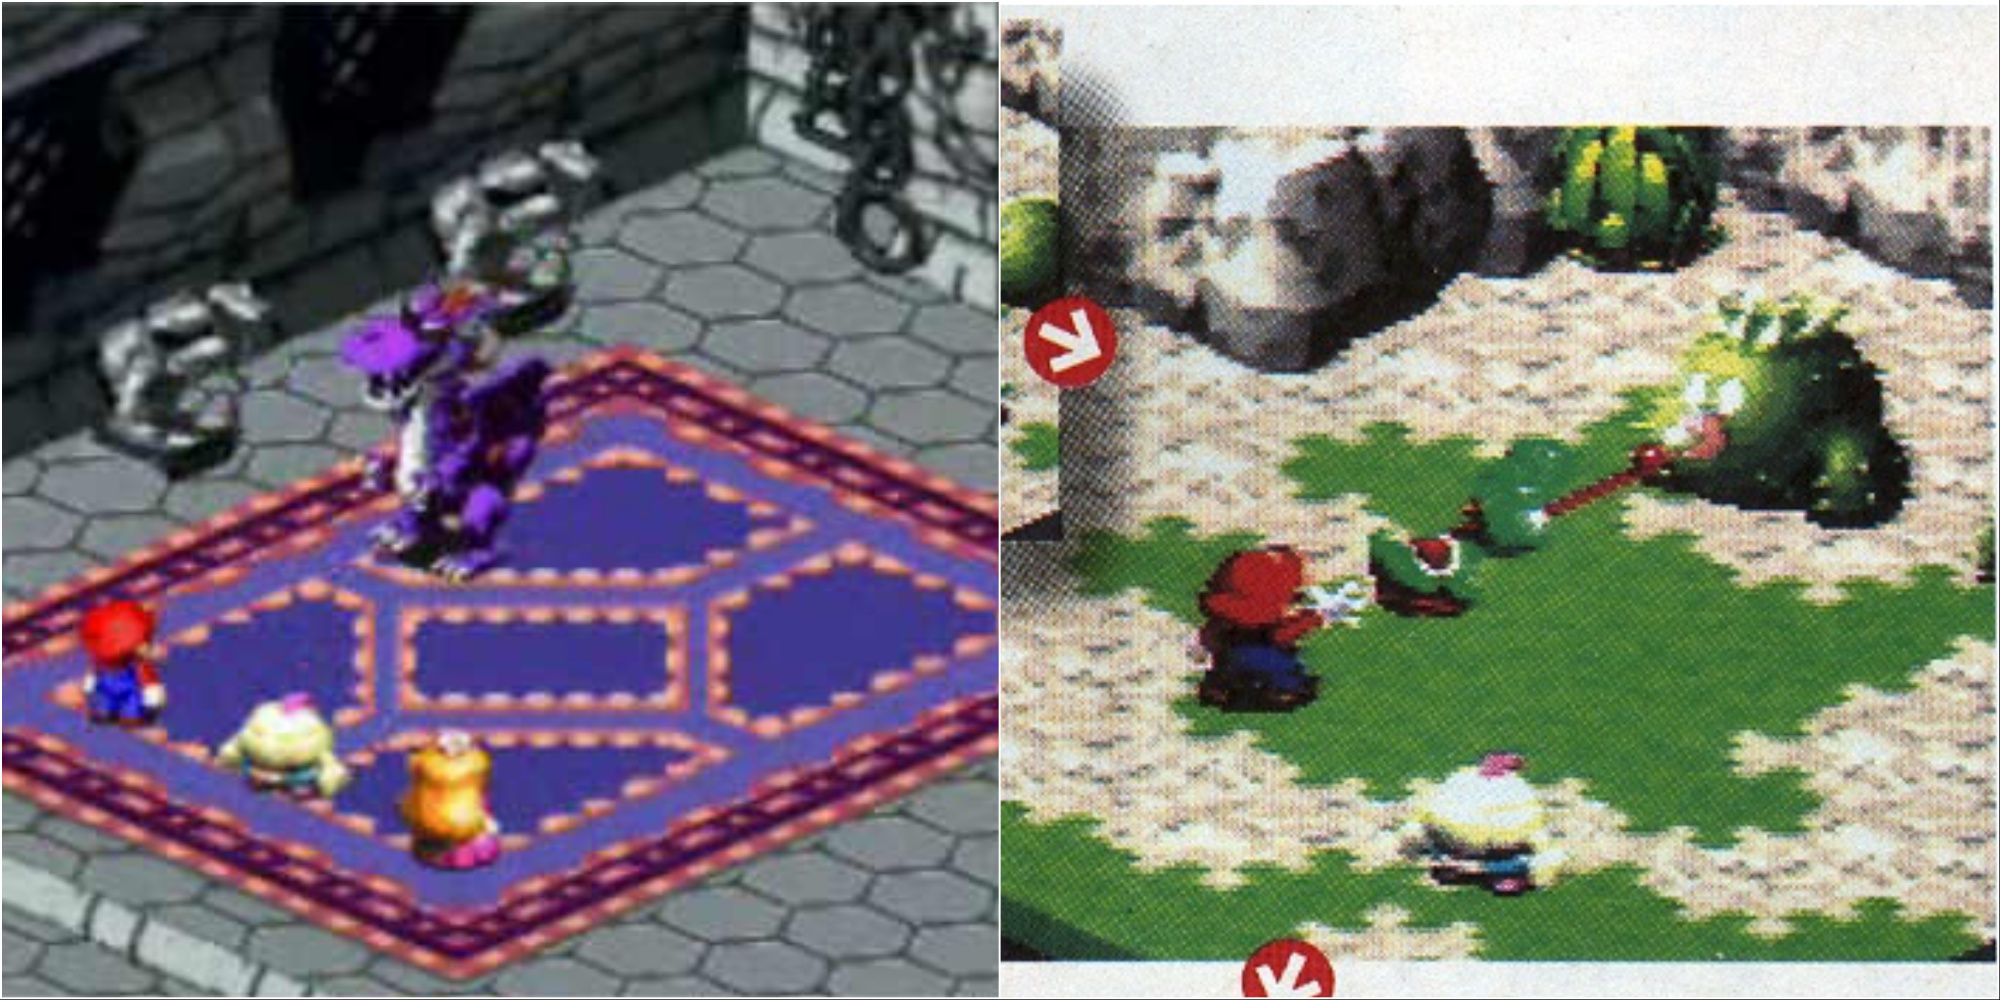 Unused dragon and cactus enemies in Super Mario RPG